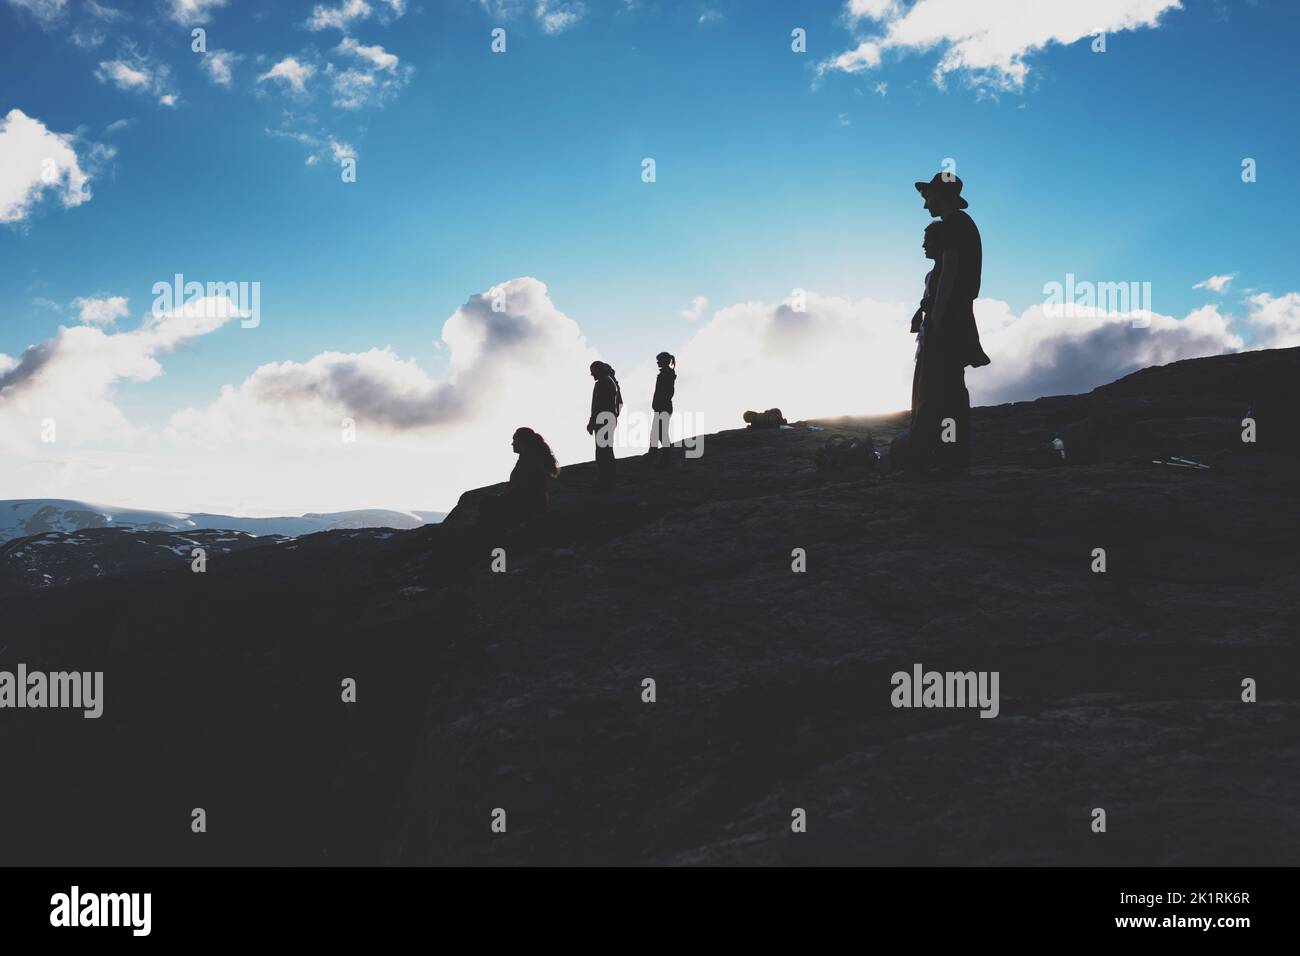 Un groupe de personnes se tenant au sommet d'une montagne et regardant dans une direction Banque D'Images